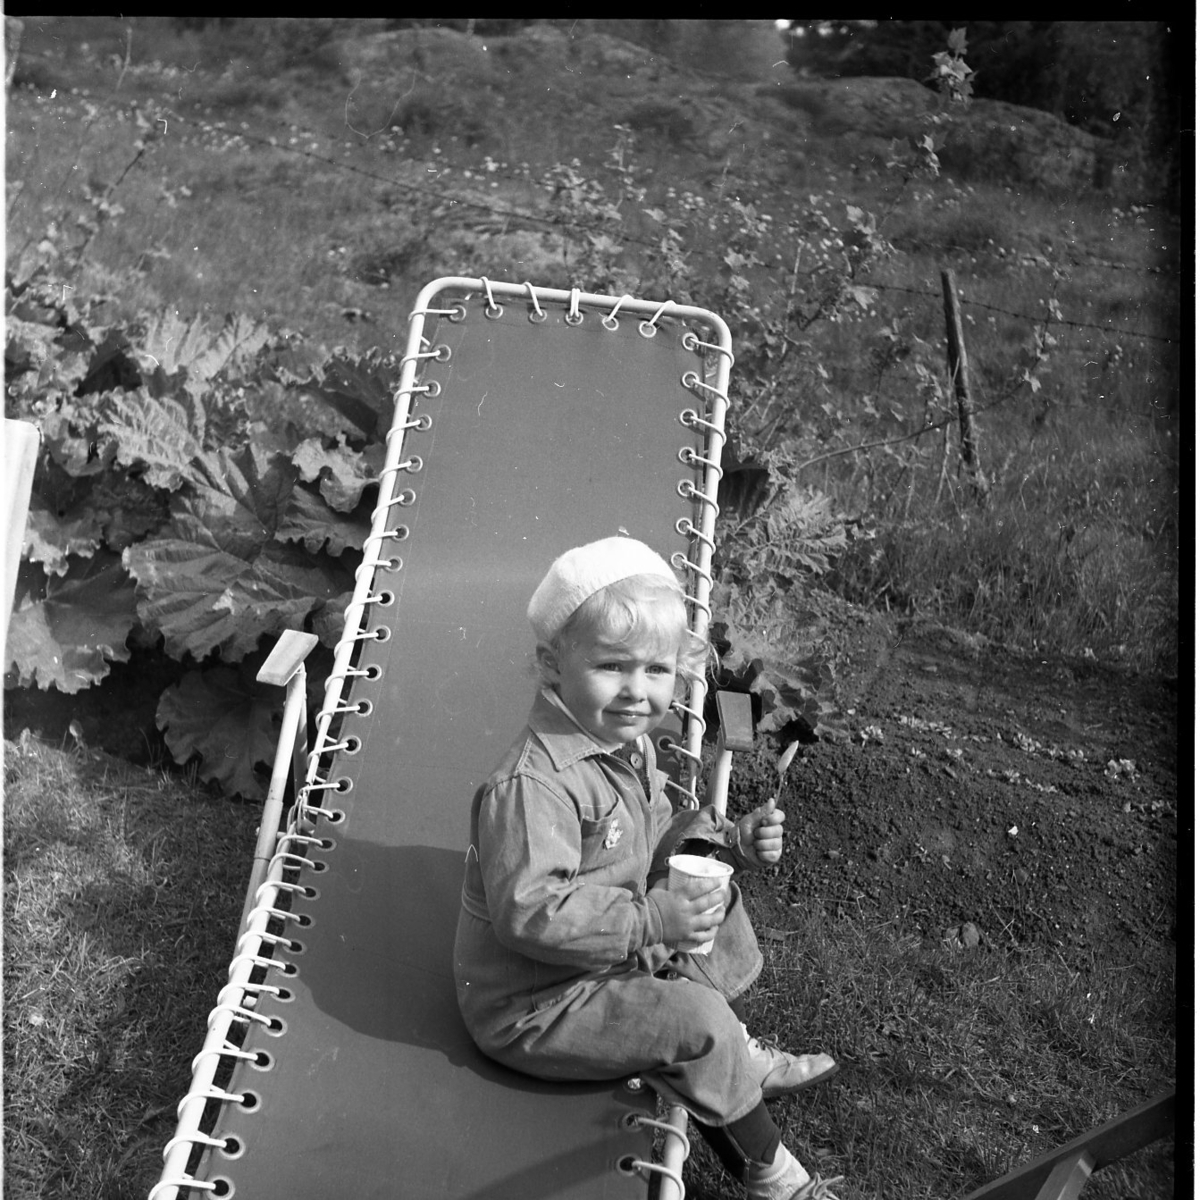 En liten flicka sitter på en solstol med en sked och en kopp i händerna. Hon har en liten mössa på huvudet.